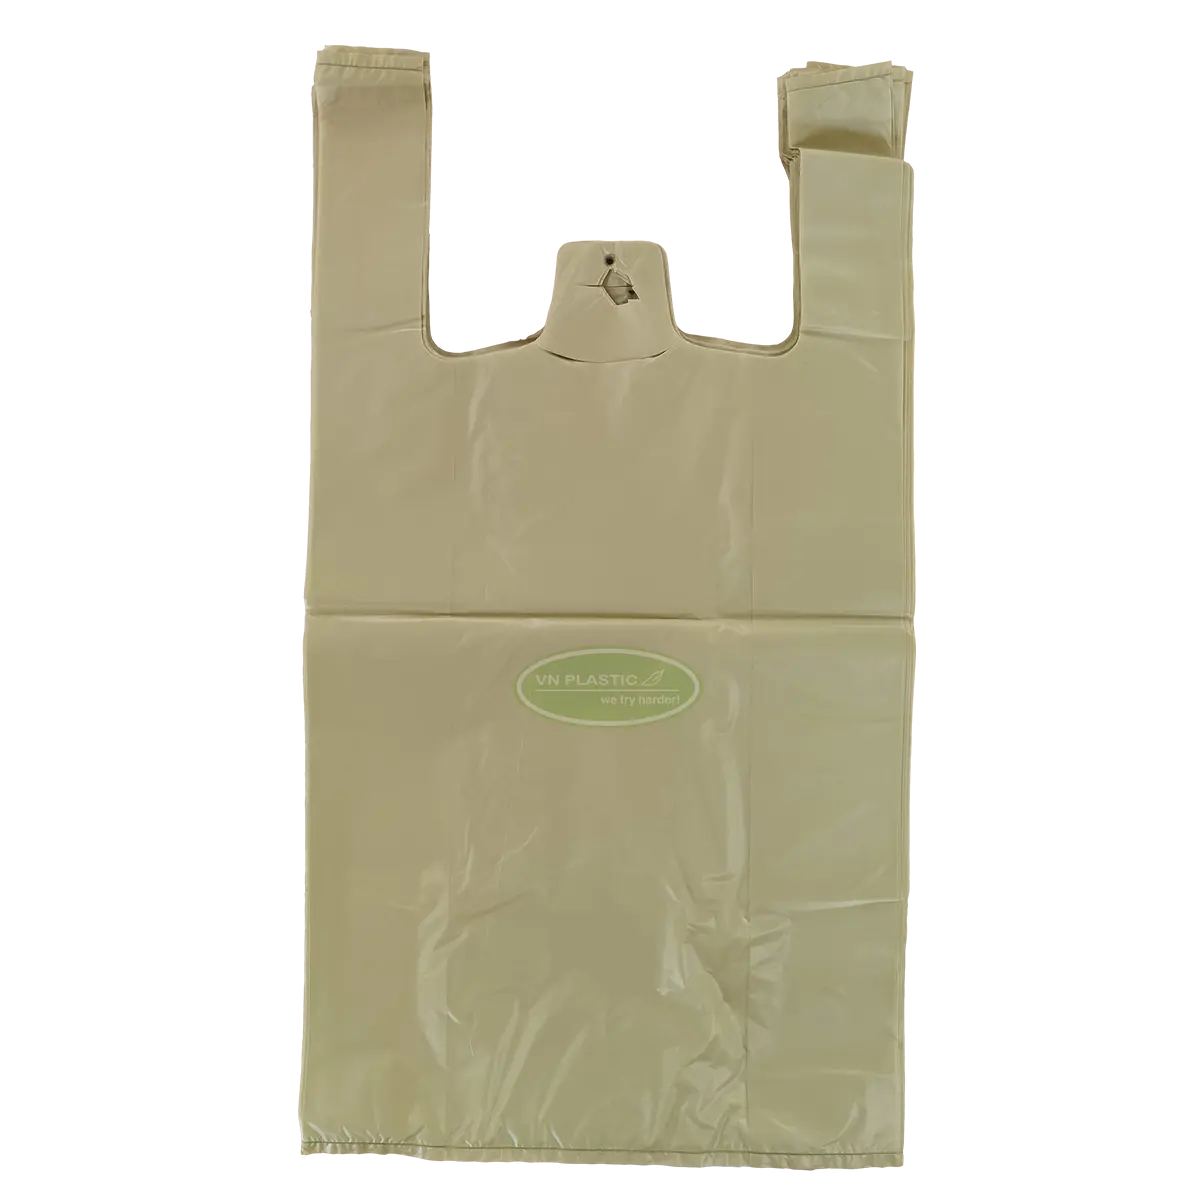 HDPE saco plástico portátil tipo sacos de plástico para embalagem T-shirt saco plástico fabricante feito no Vietnã